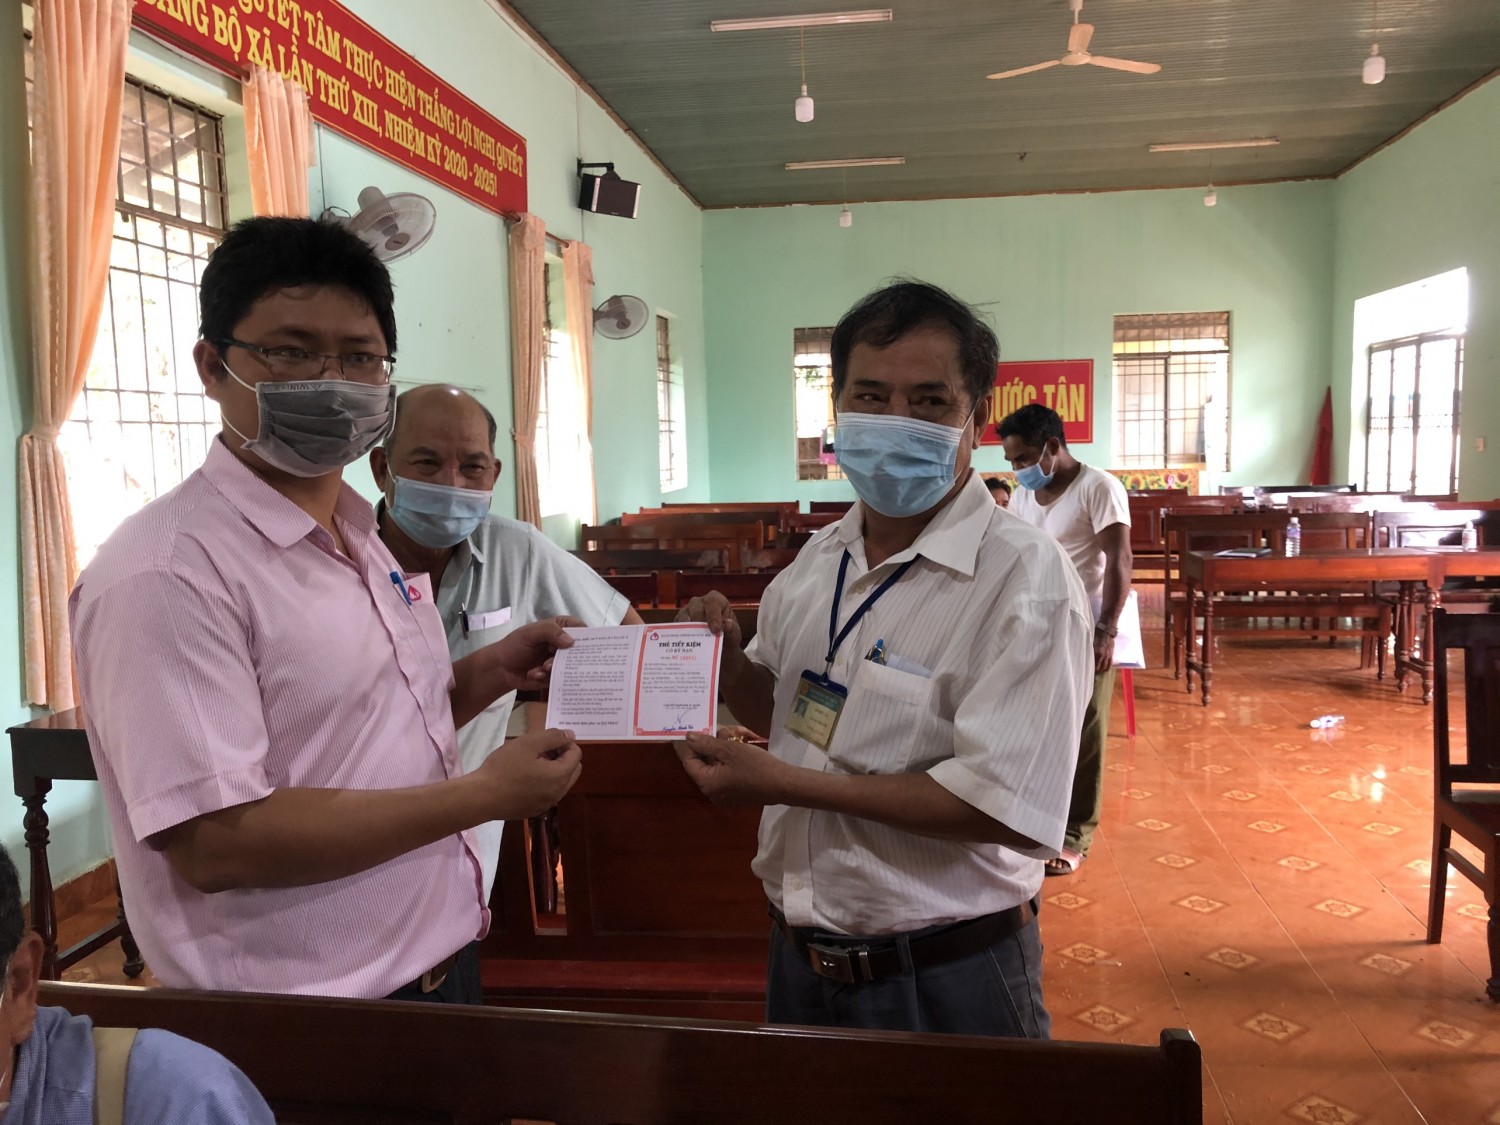 Ngân hàng chính sách huyện giải ngân cho 14 hộ dân xã Phước Tân